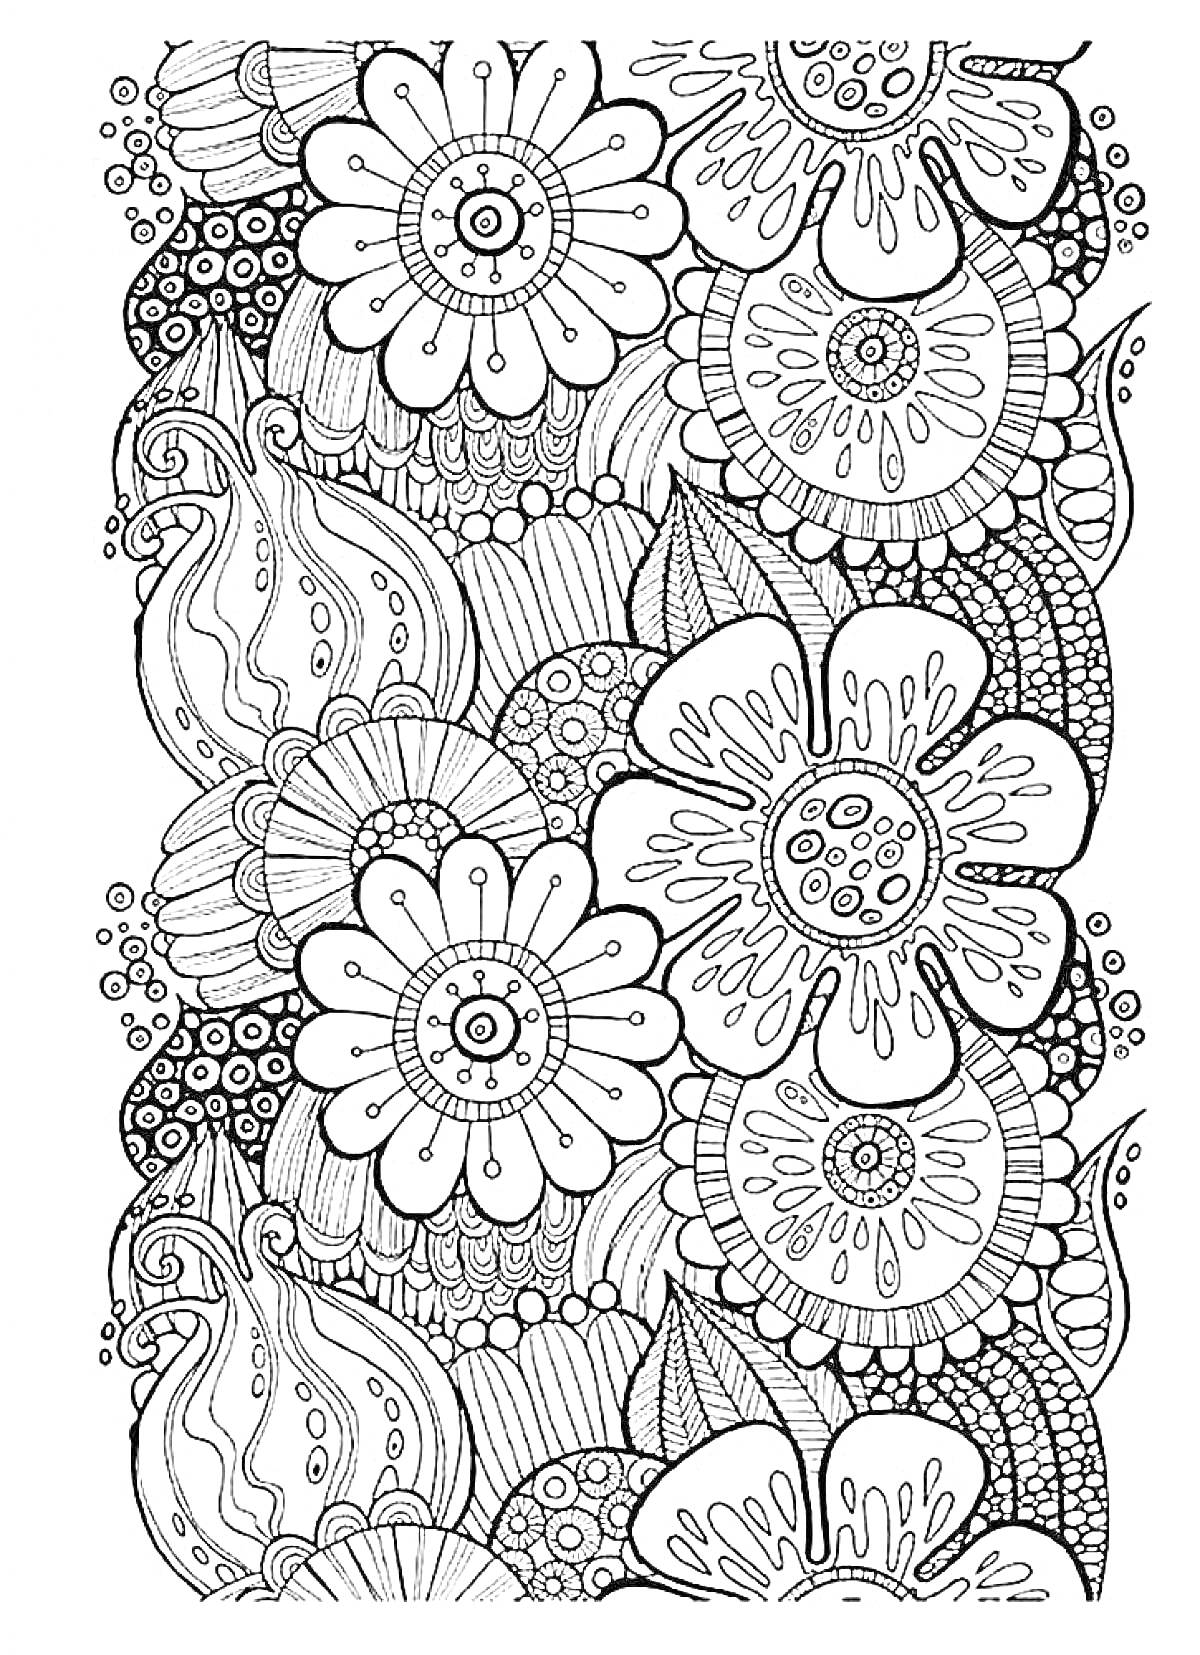 Раскраска Антистресс раскраска с крупными цветами, листьями и абстрактными узорами